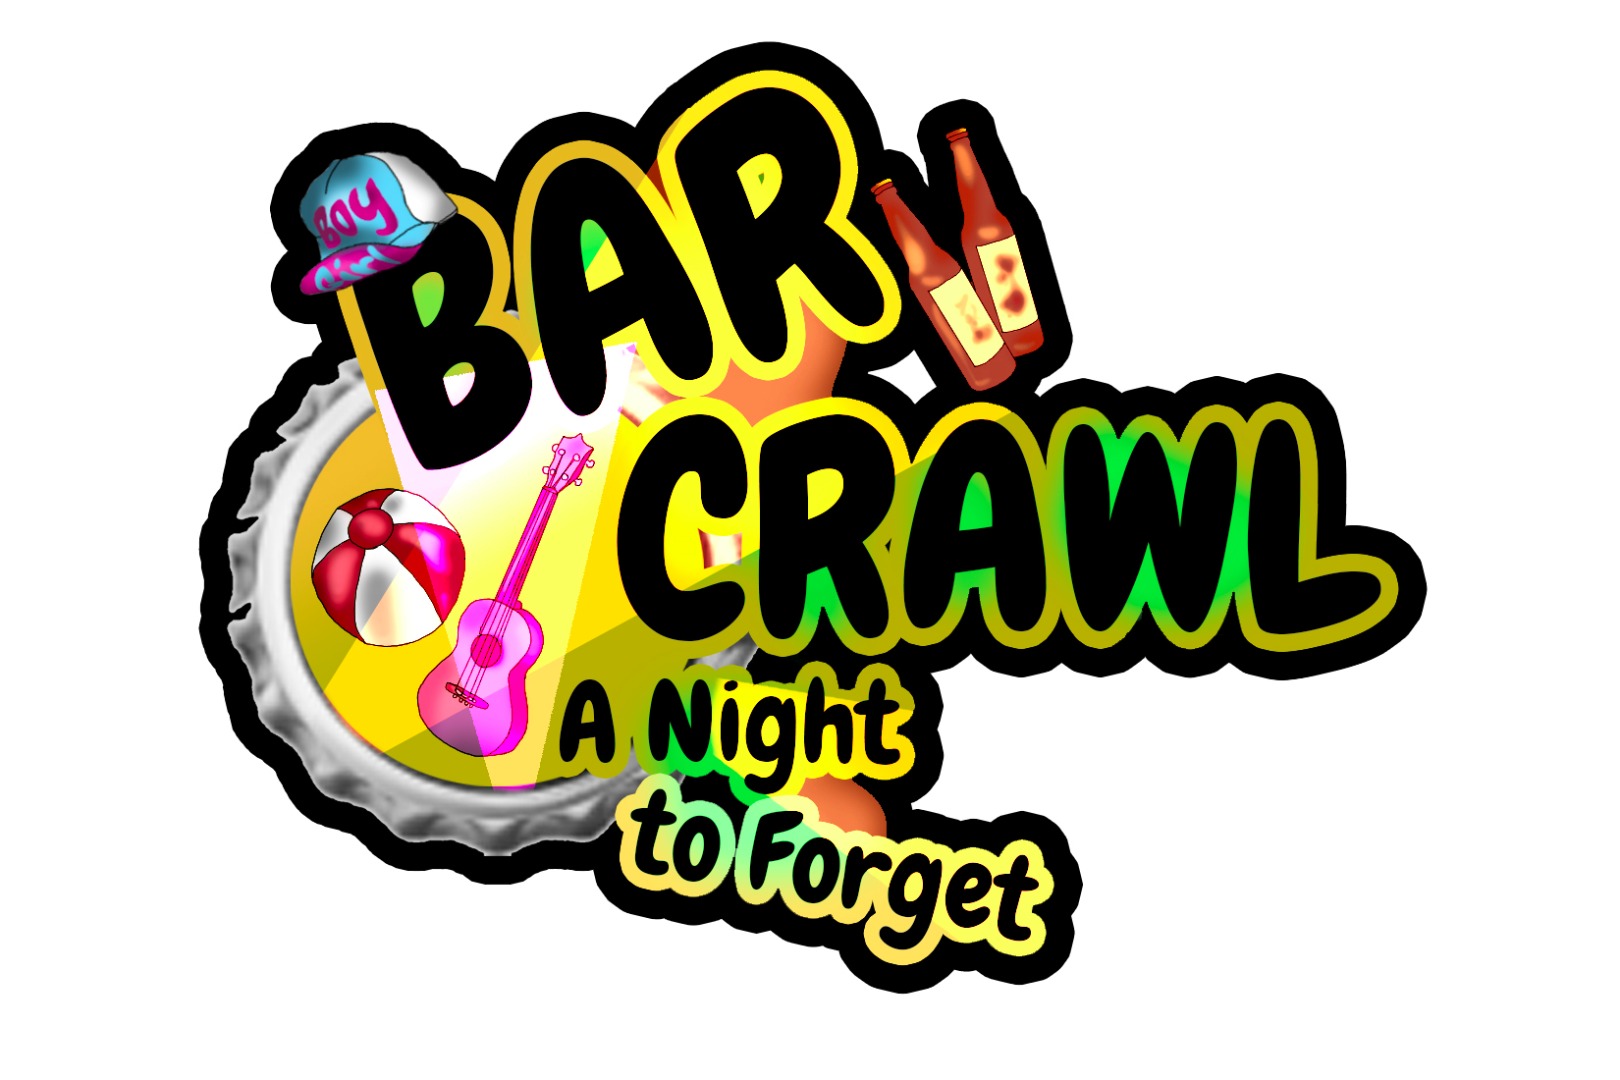 Bar crawl frolics